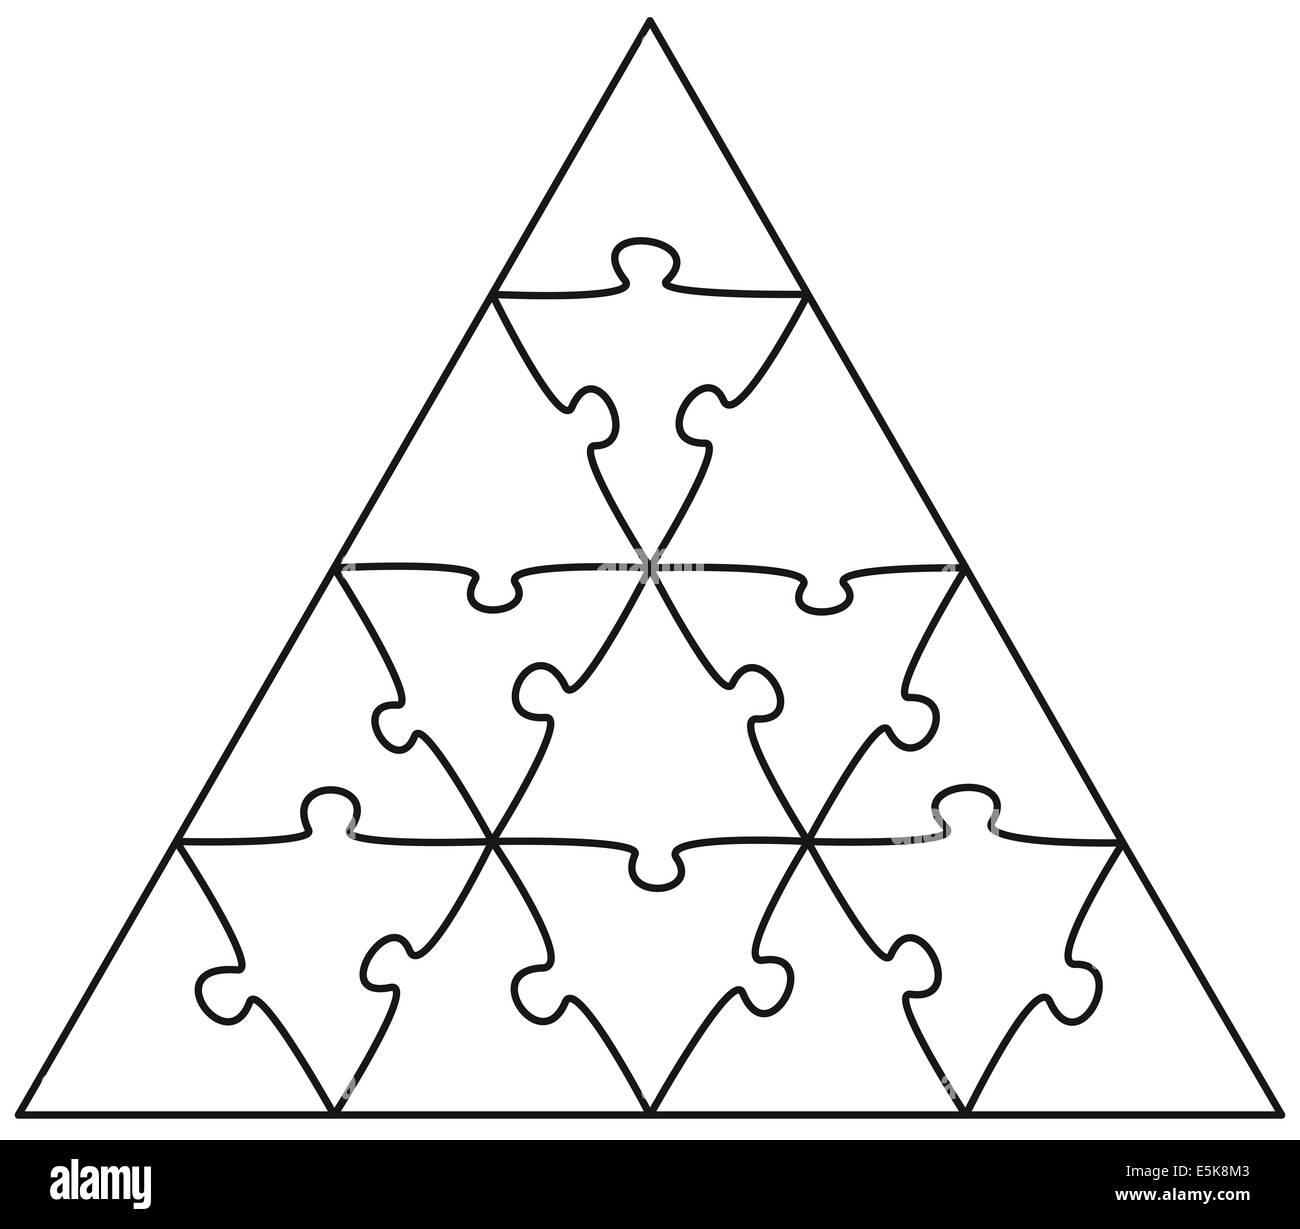 Jigsaw Puzzle Dreieck - Abbildung auf weißem Hintergrund. Stockfoto